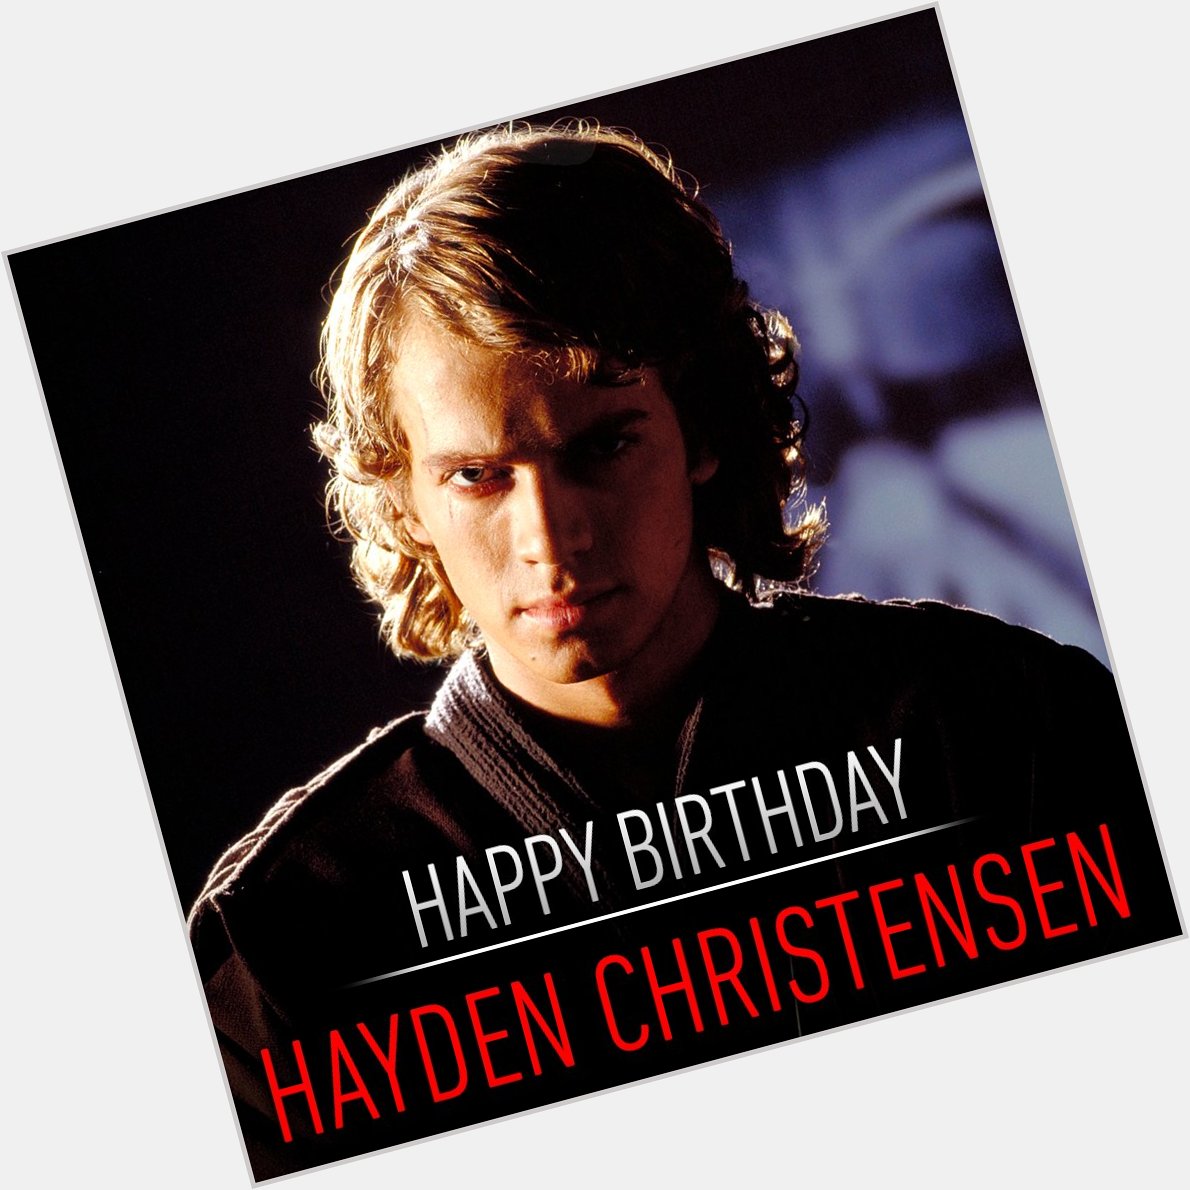 Happy Birthday to the Chosen One. Vandaag is Hayden Christensen jarig. Wat is jouw favoriete scène met hem? 